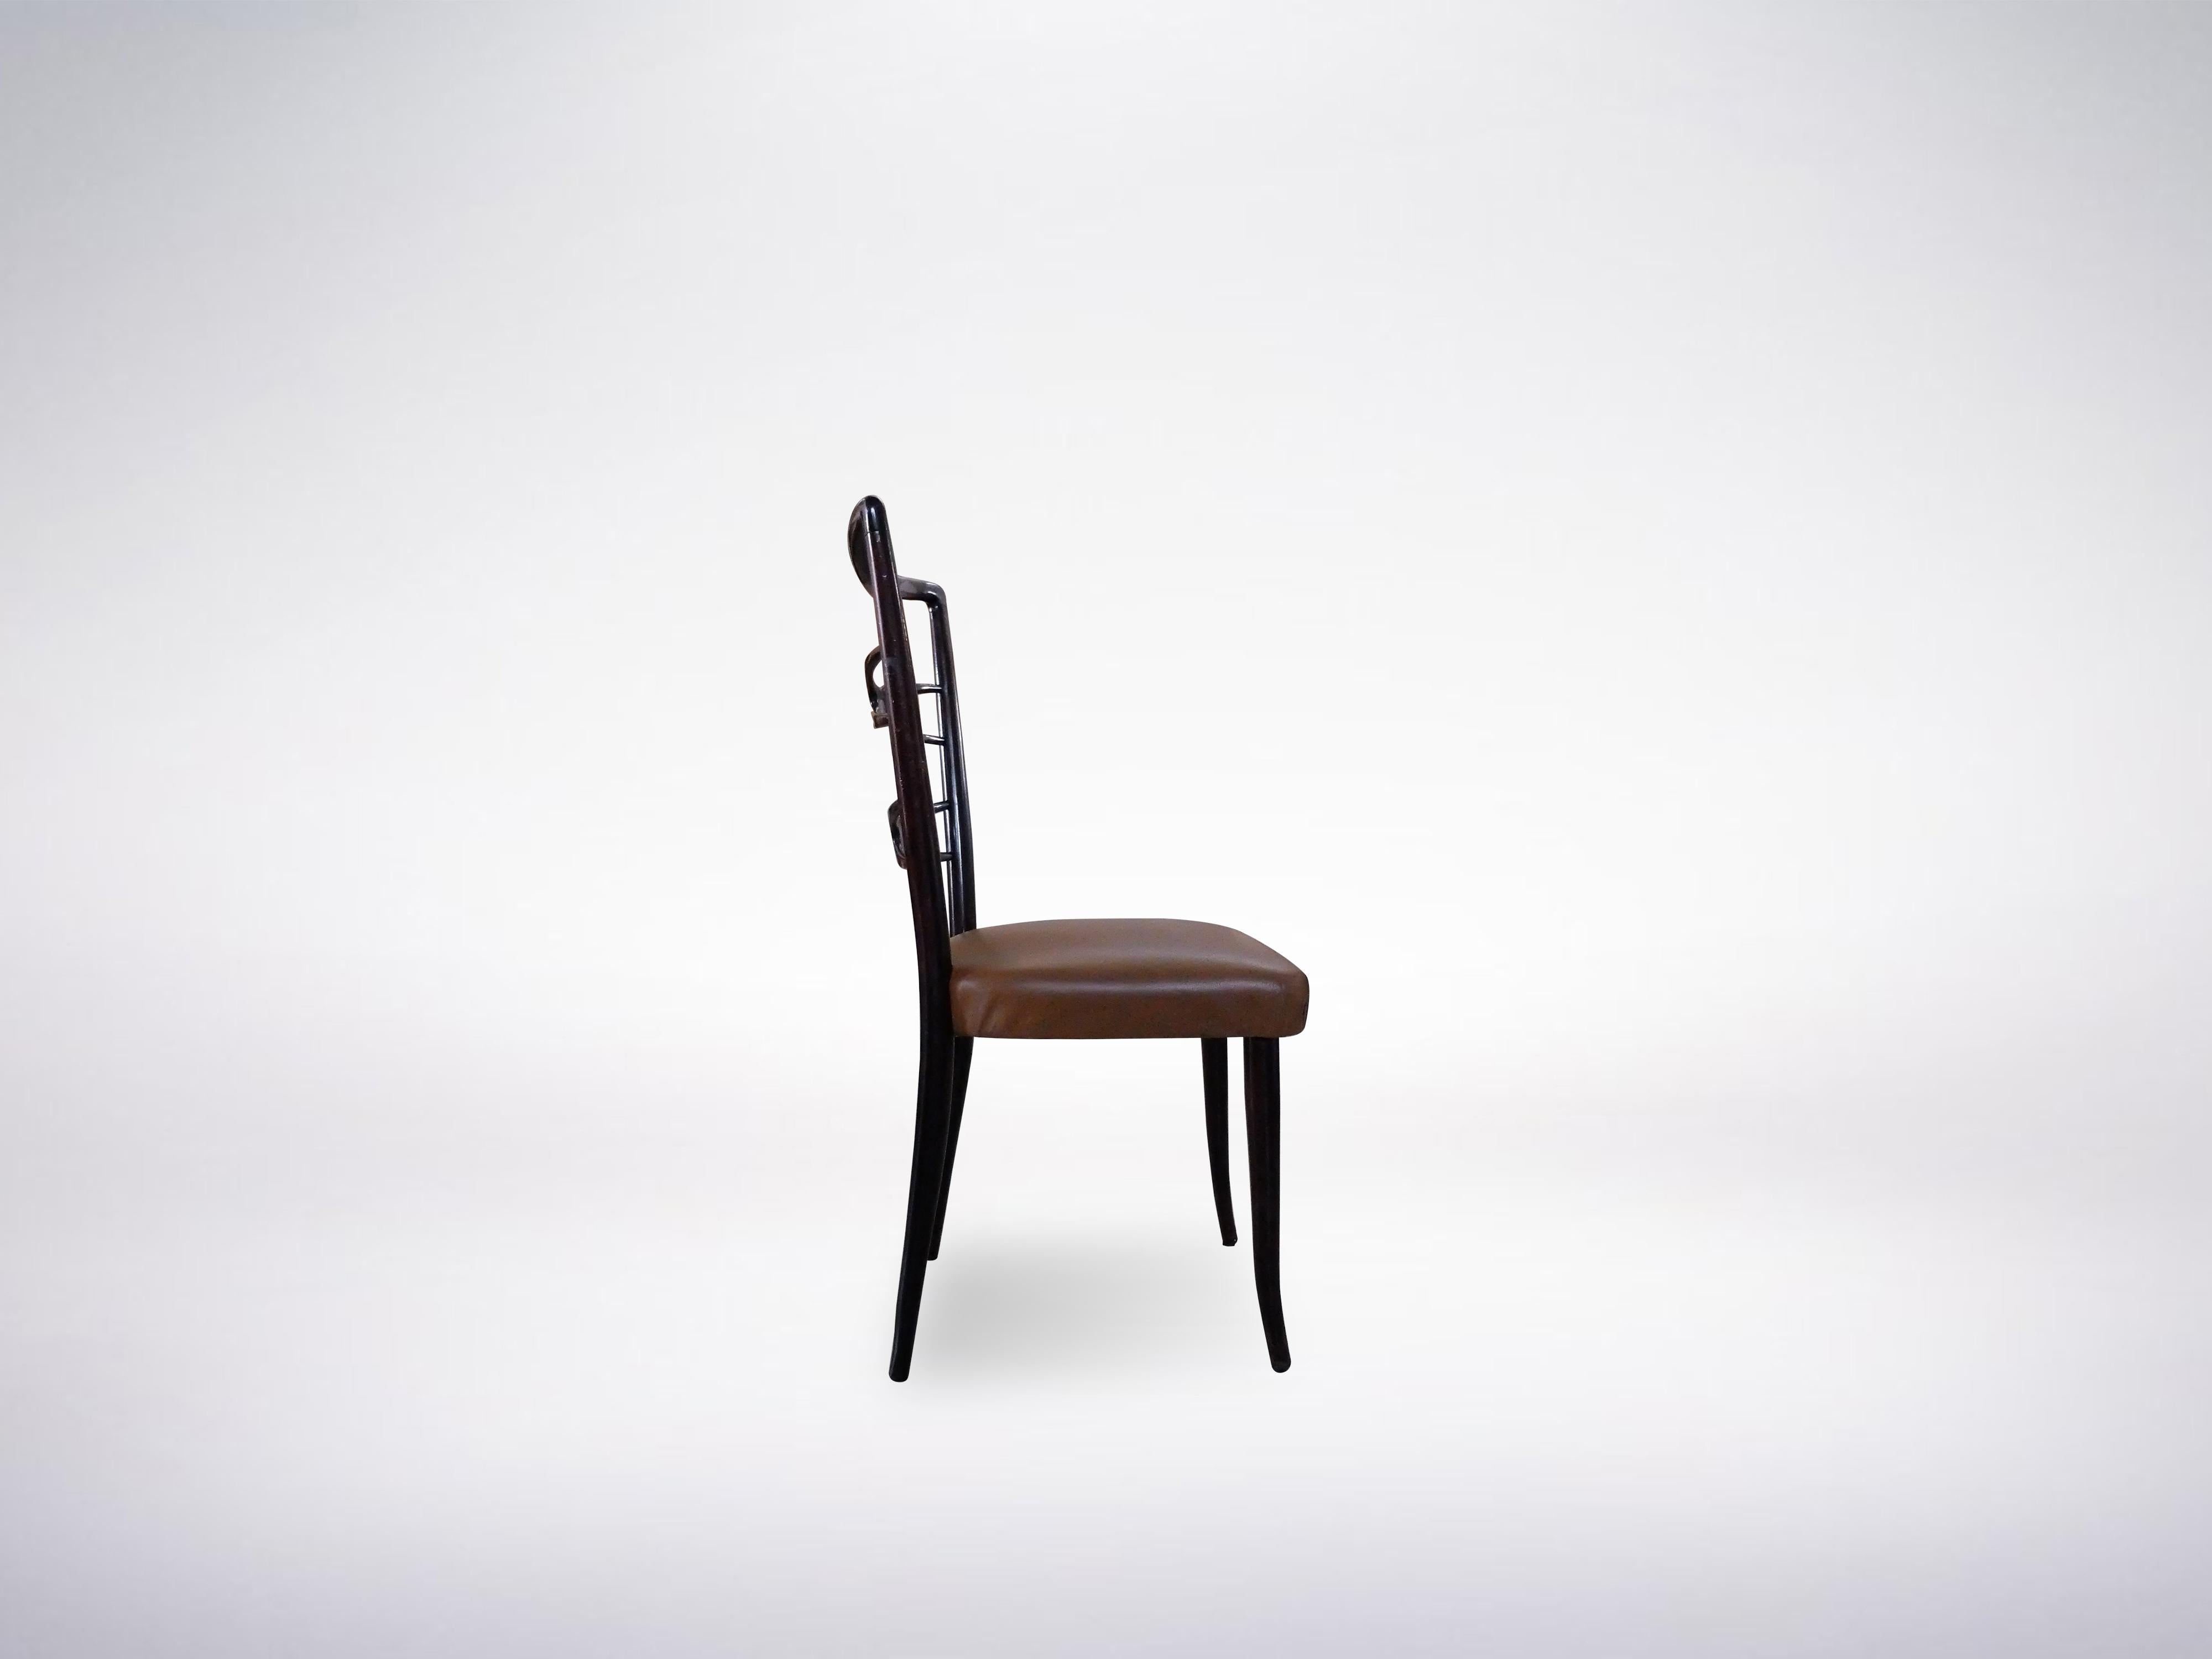 Fein gearbeiteter Satz von sechs Esszimmerstühlen aus ebonisiertem Holz und braunem Leder von Guglielmo Ulrich, um 1940.

Die Besonderheit des Sets ist seine elegante Rückenlehne mit gekreuzten Holzmotiven. Das Set ist perfekt, um den Esstisch in